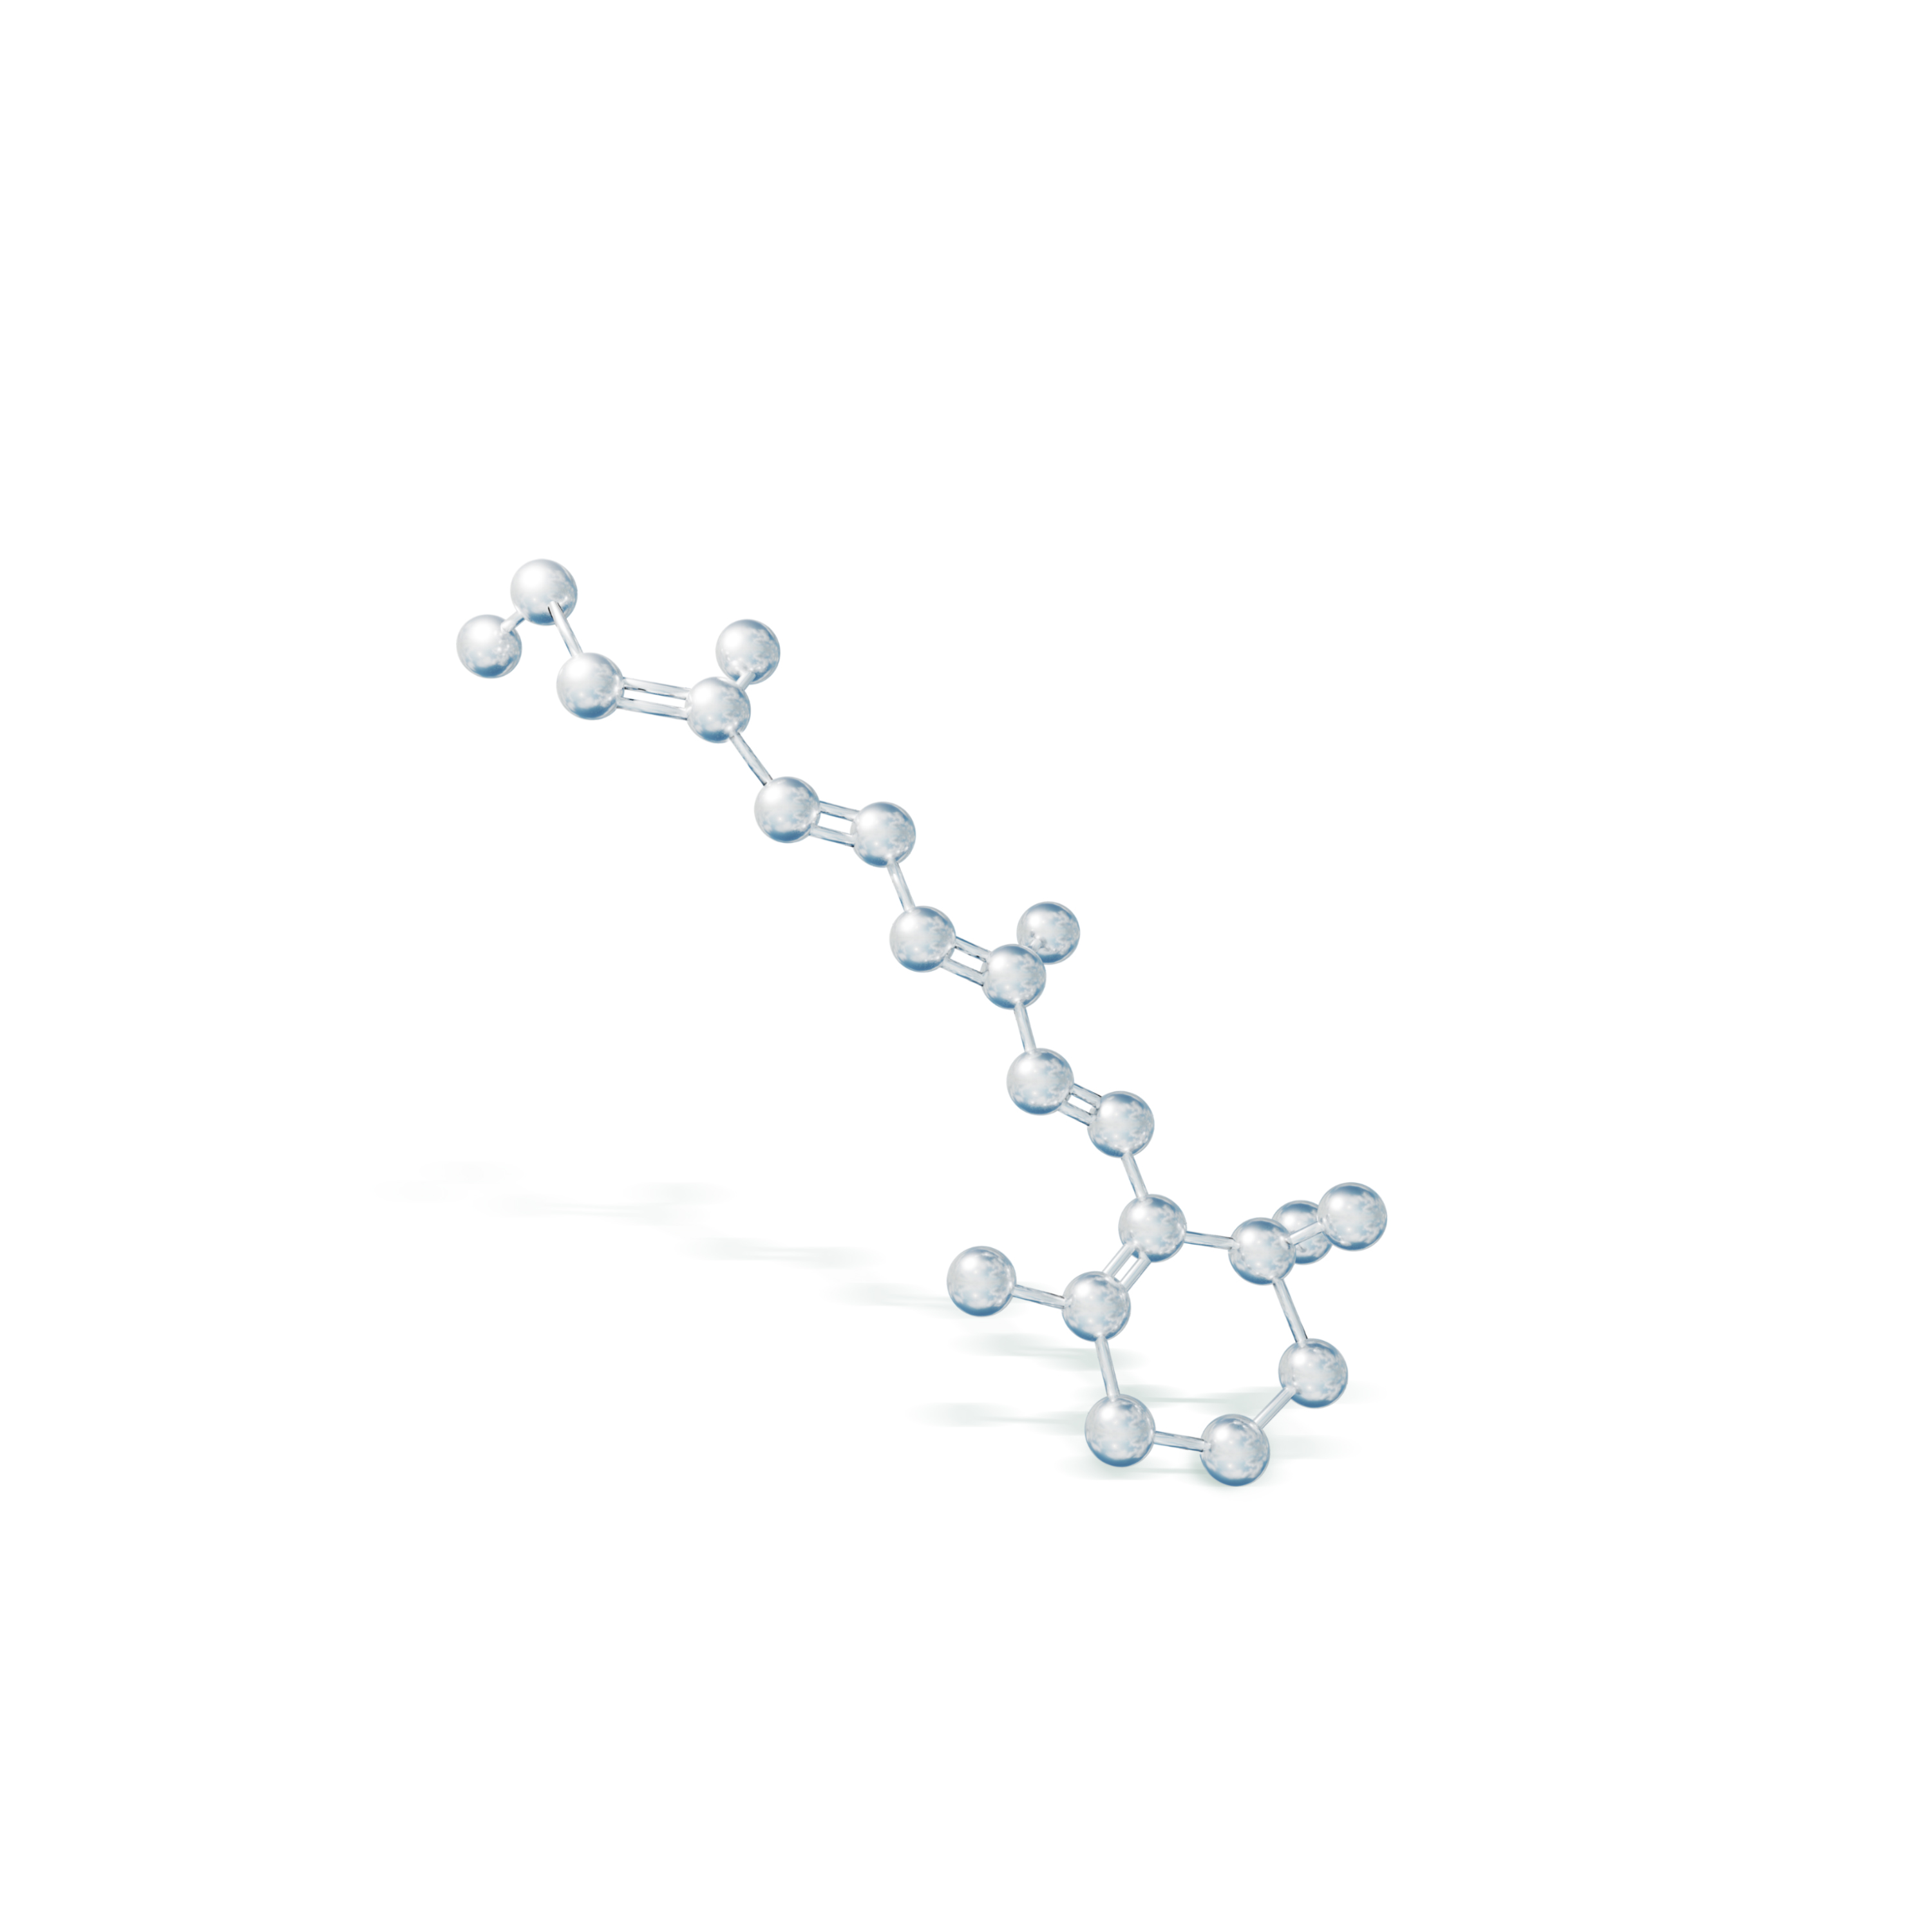 Retinol molecule